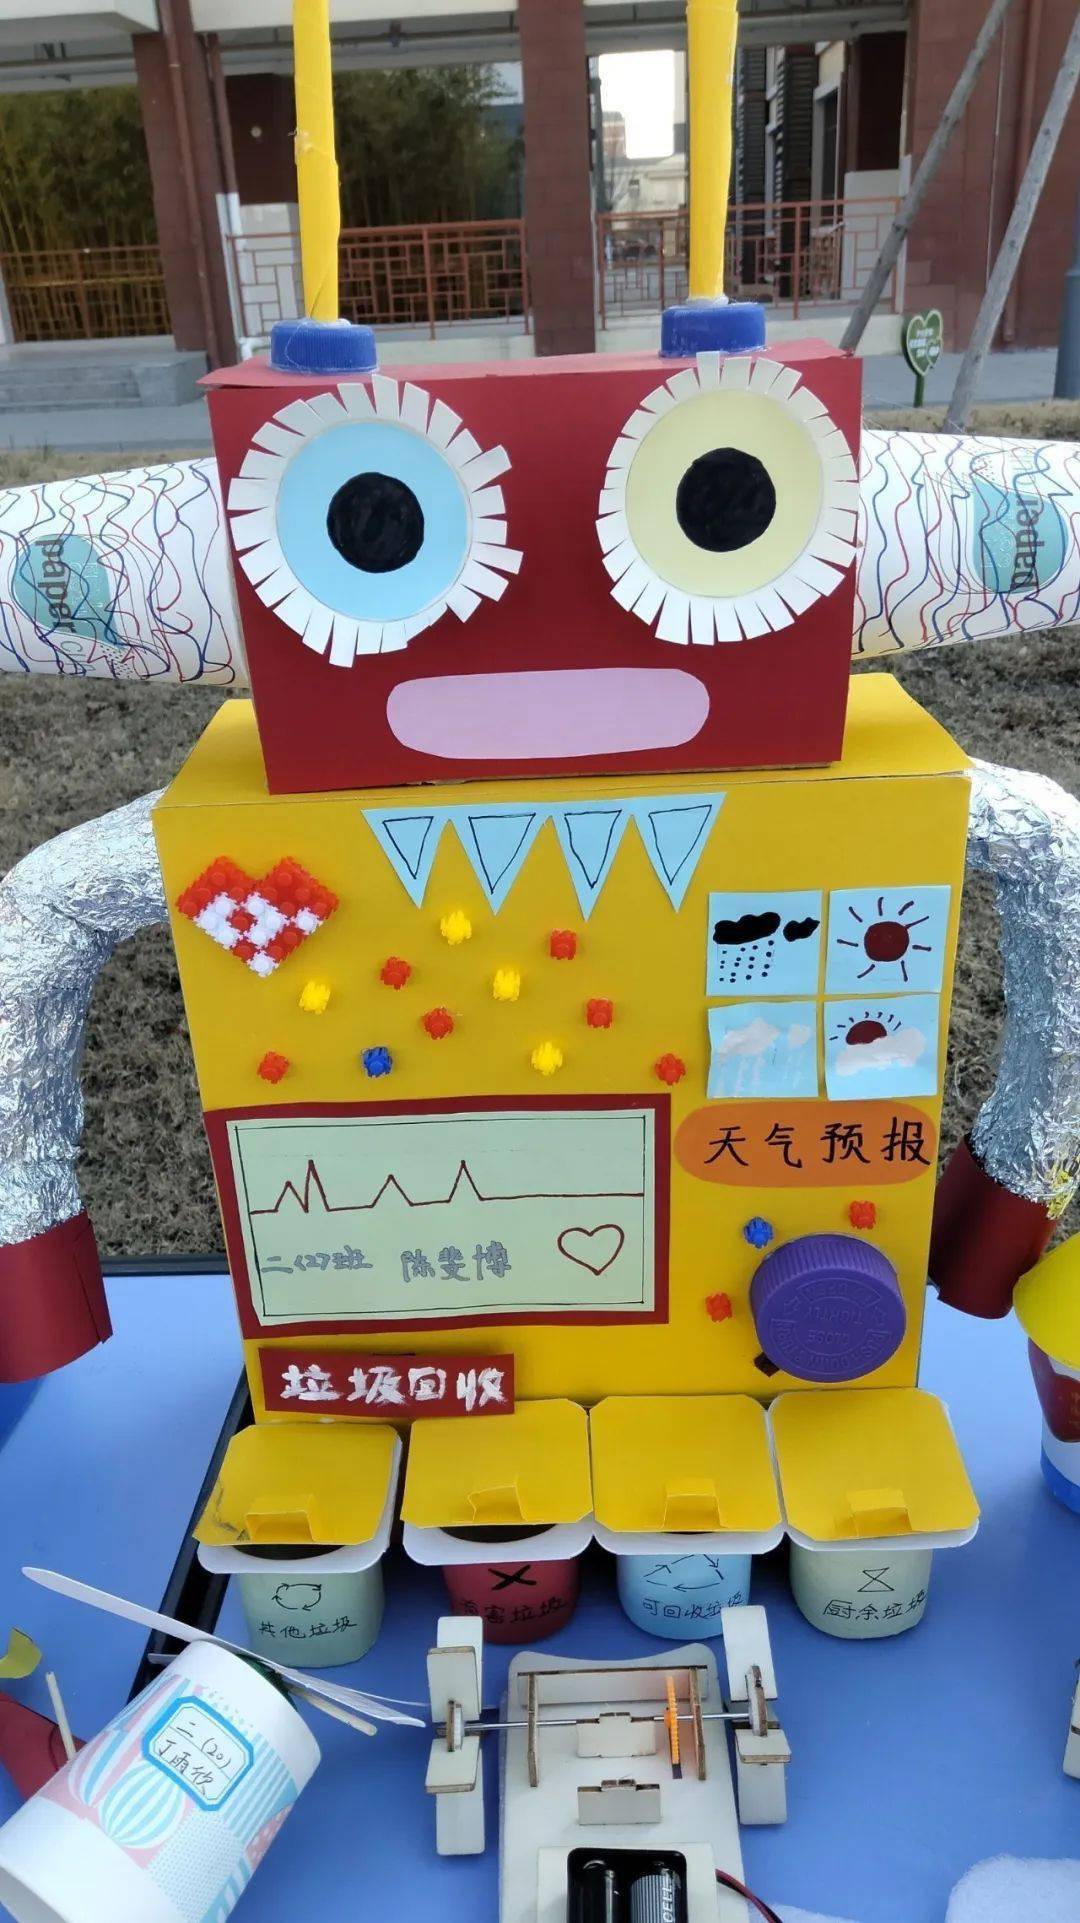 奇思妙想小制作,铸就未来科技梦——宿州市通济小学科技节优秀作品展